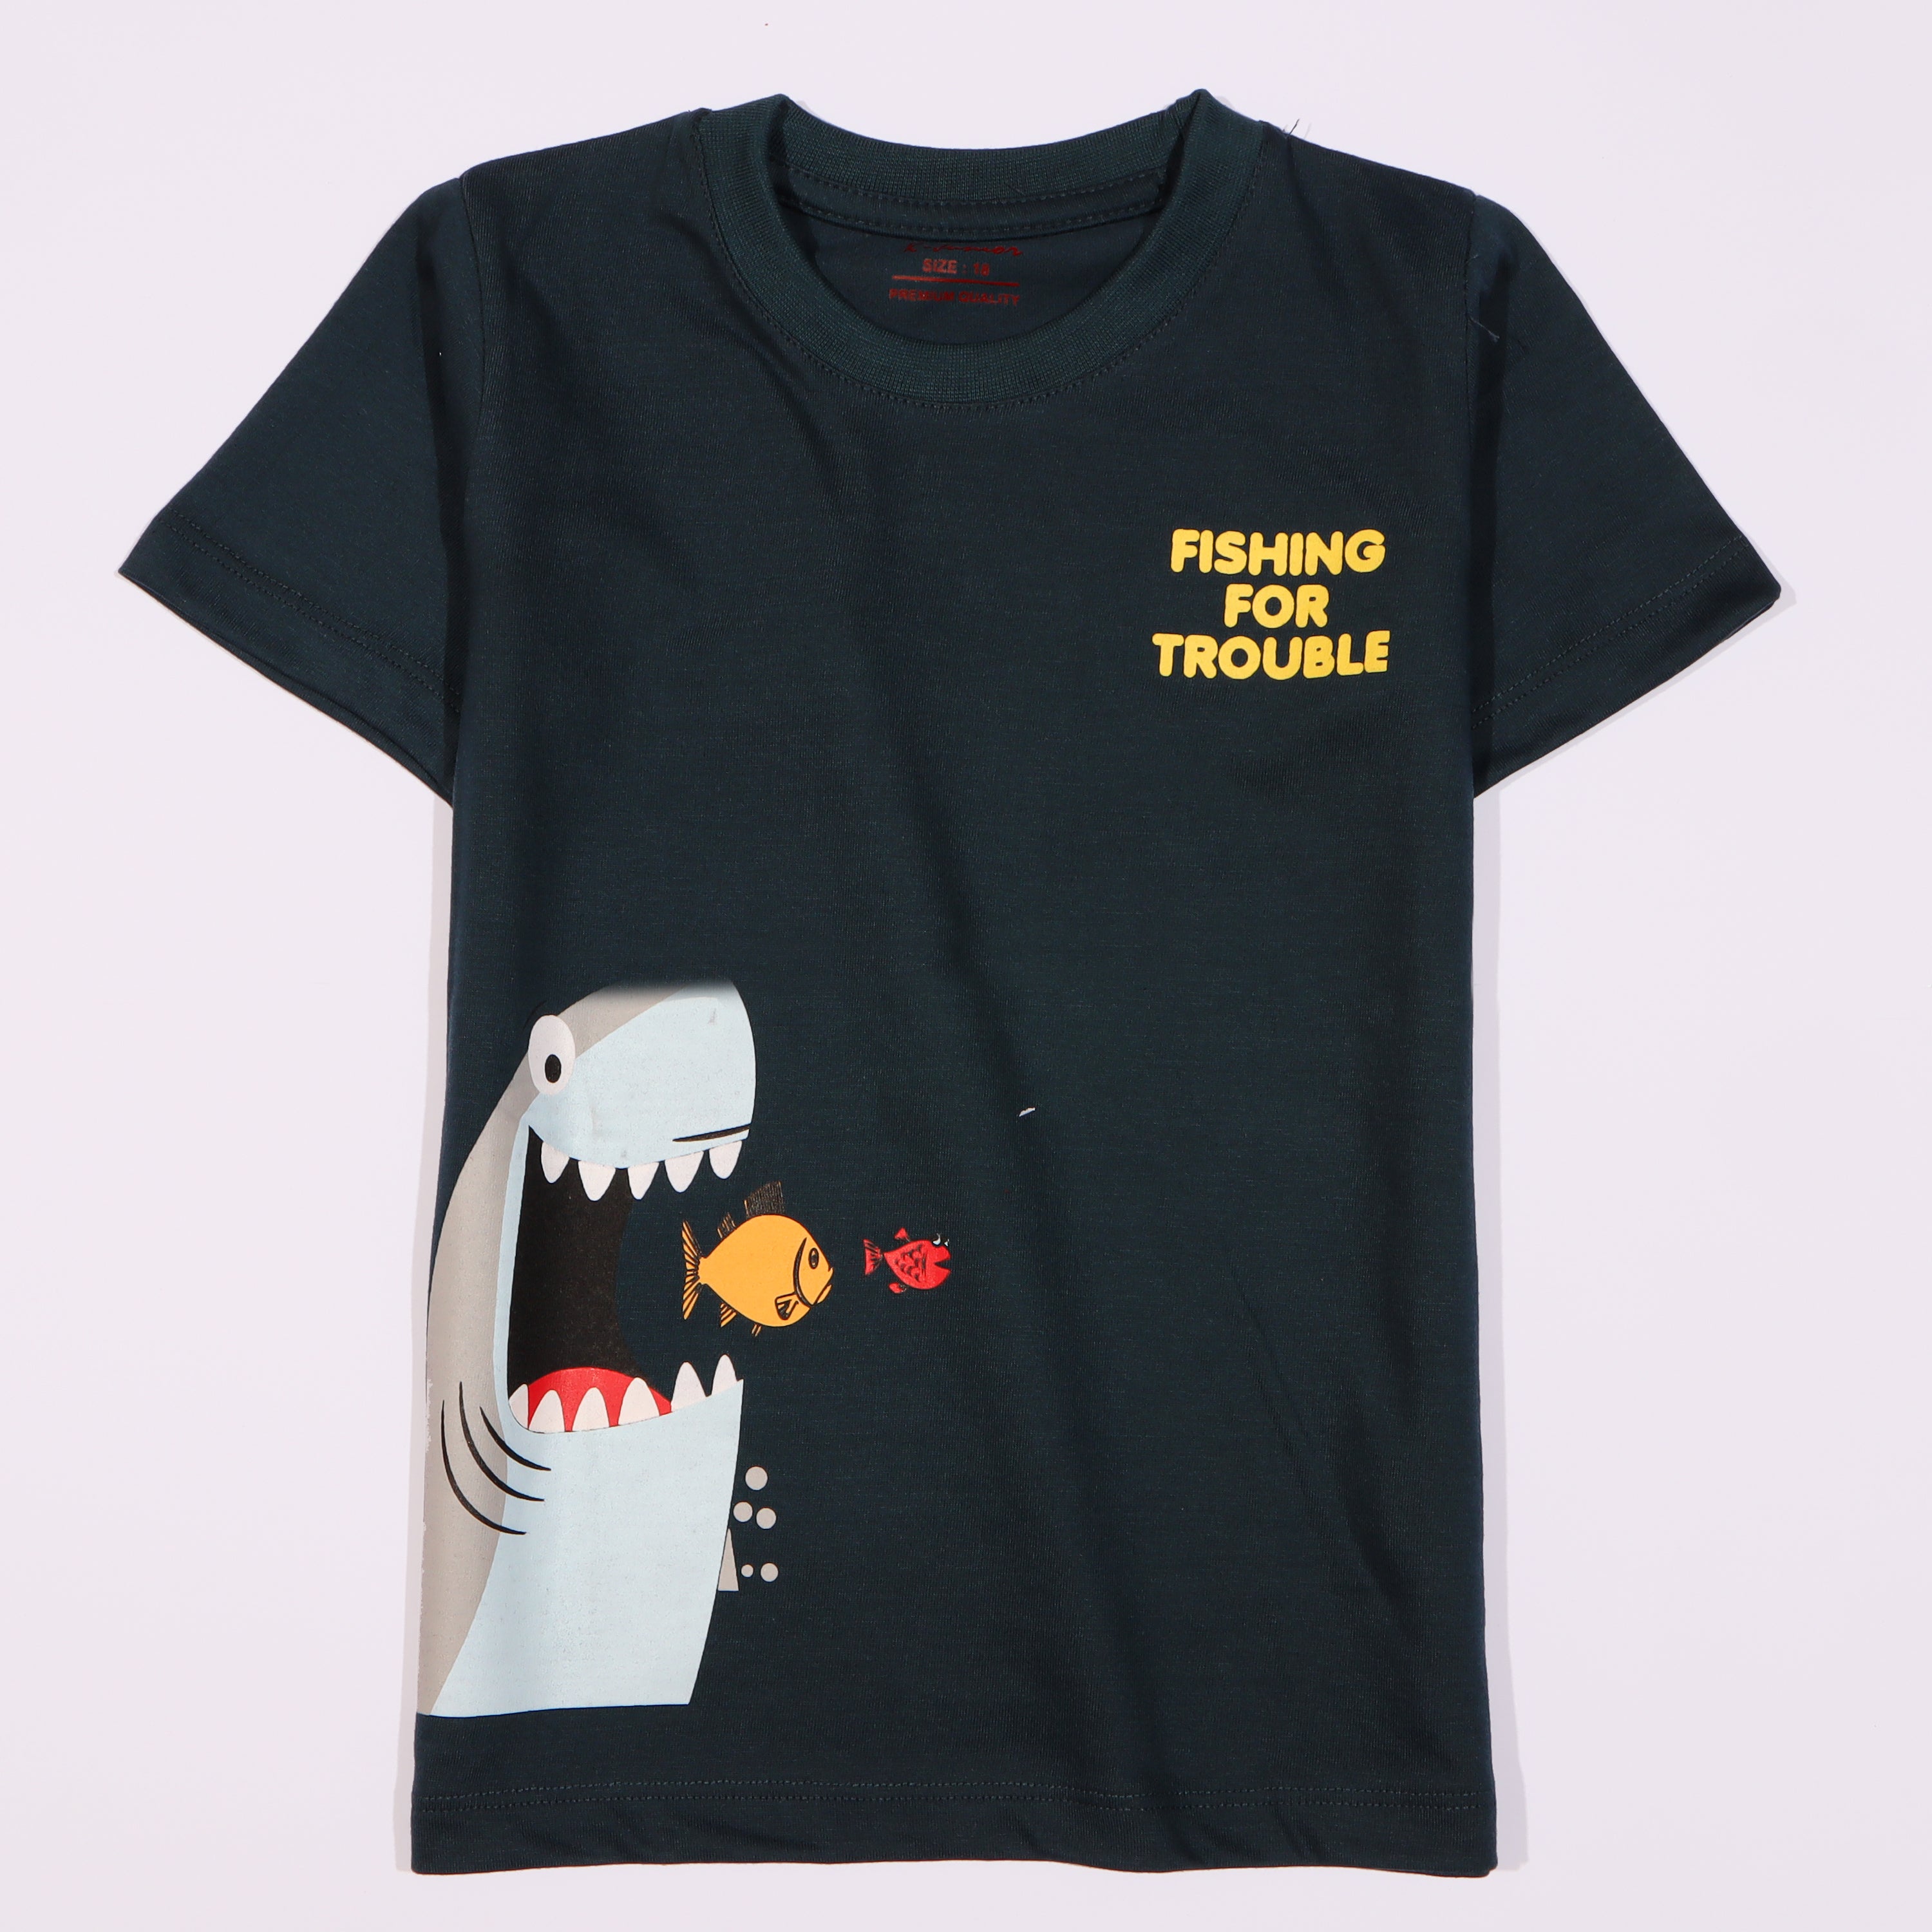 Boys Half Sleeves-Printed T-Shirt (fishing)